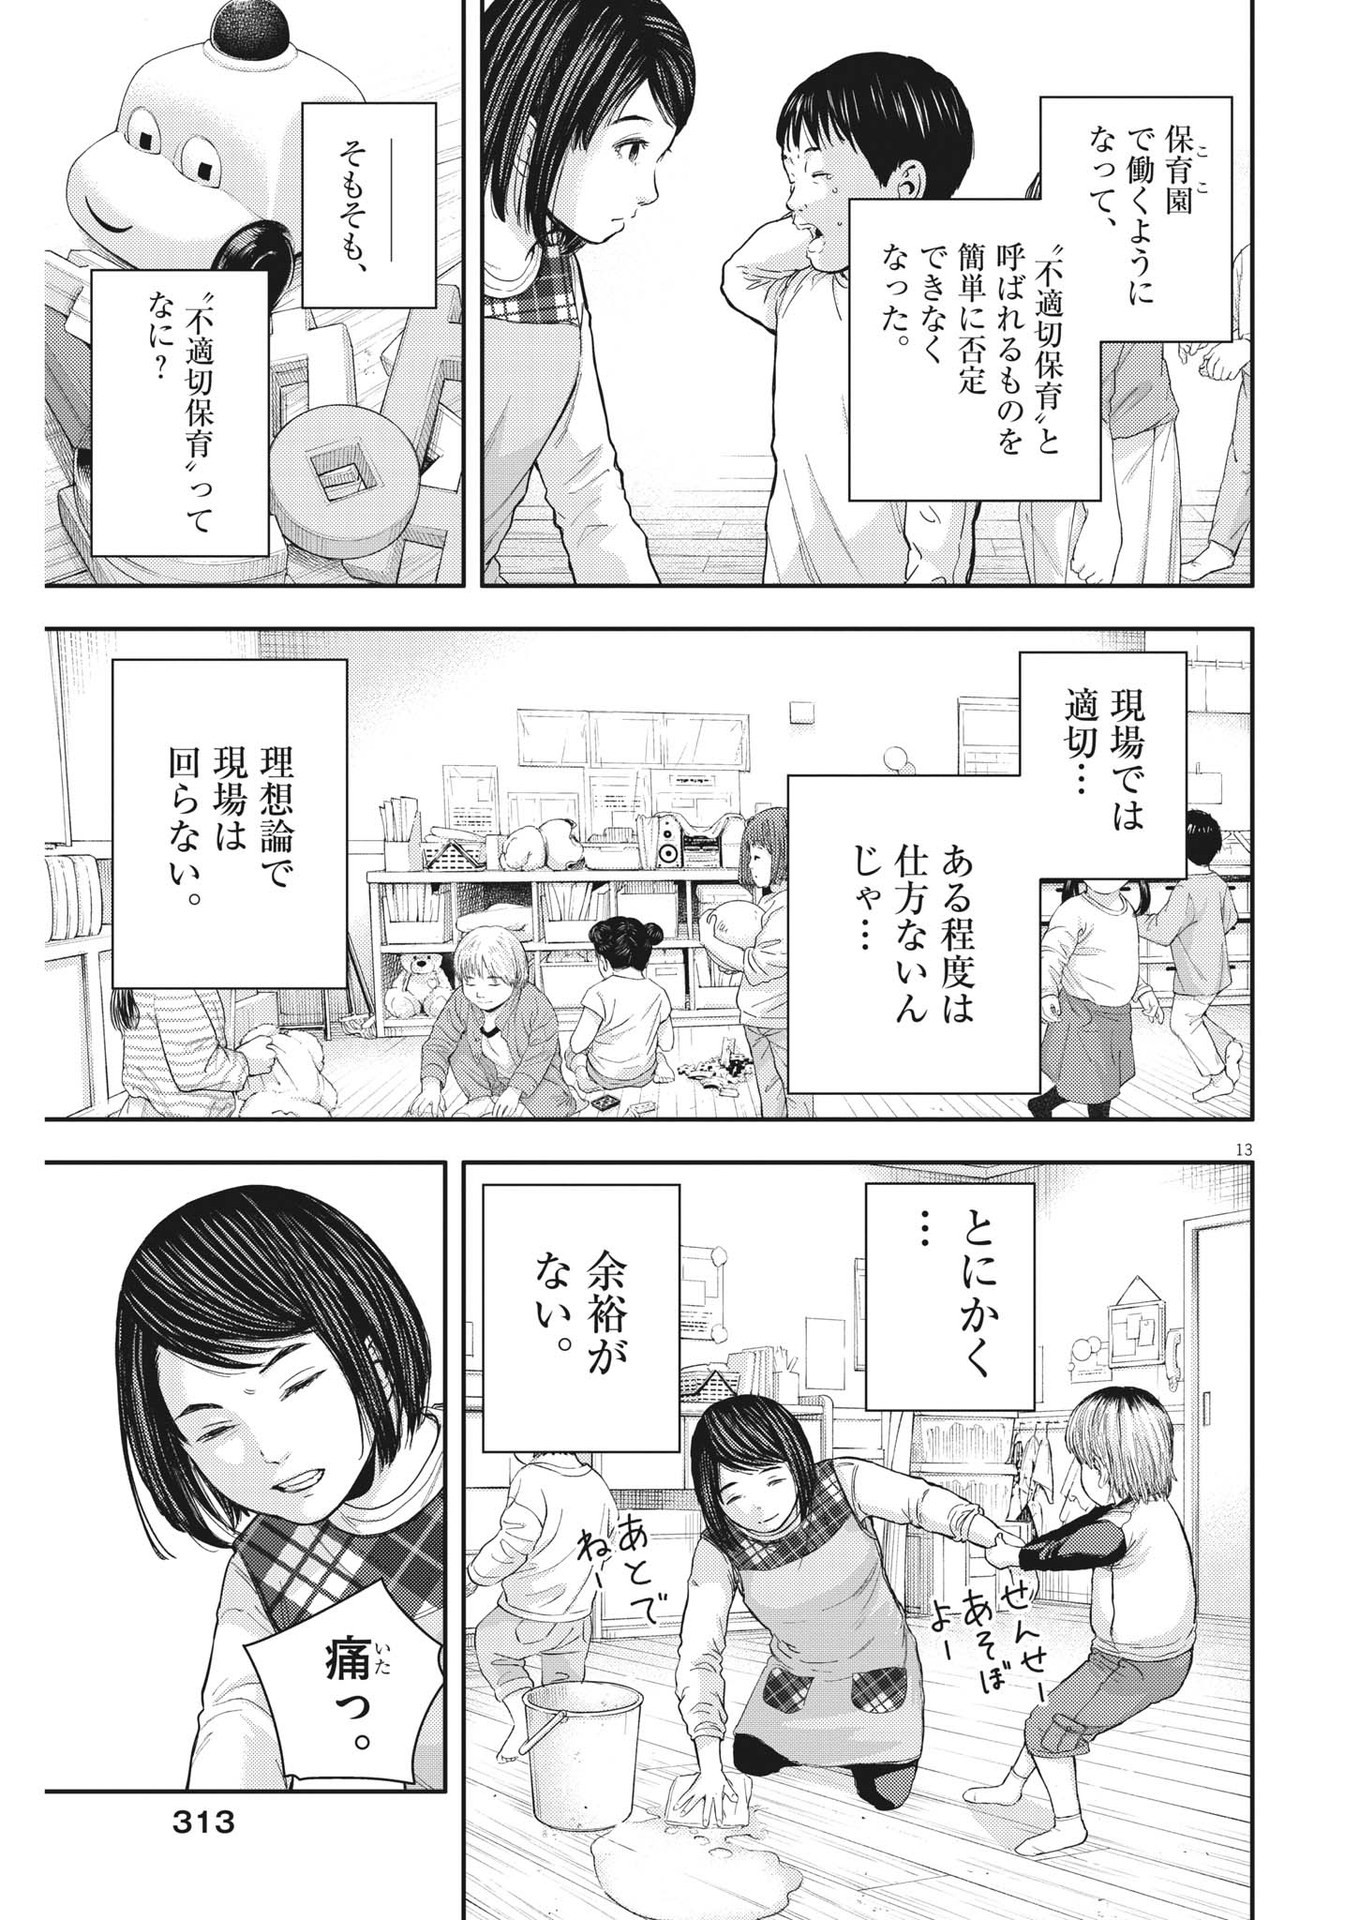 Yumenashi-sensei no Shinroshidou - Chapter 22 - Page 13